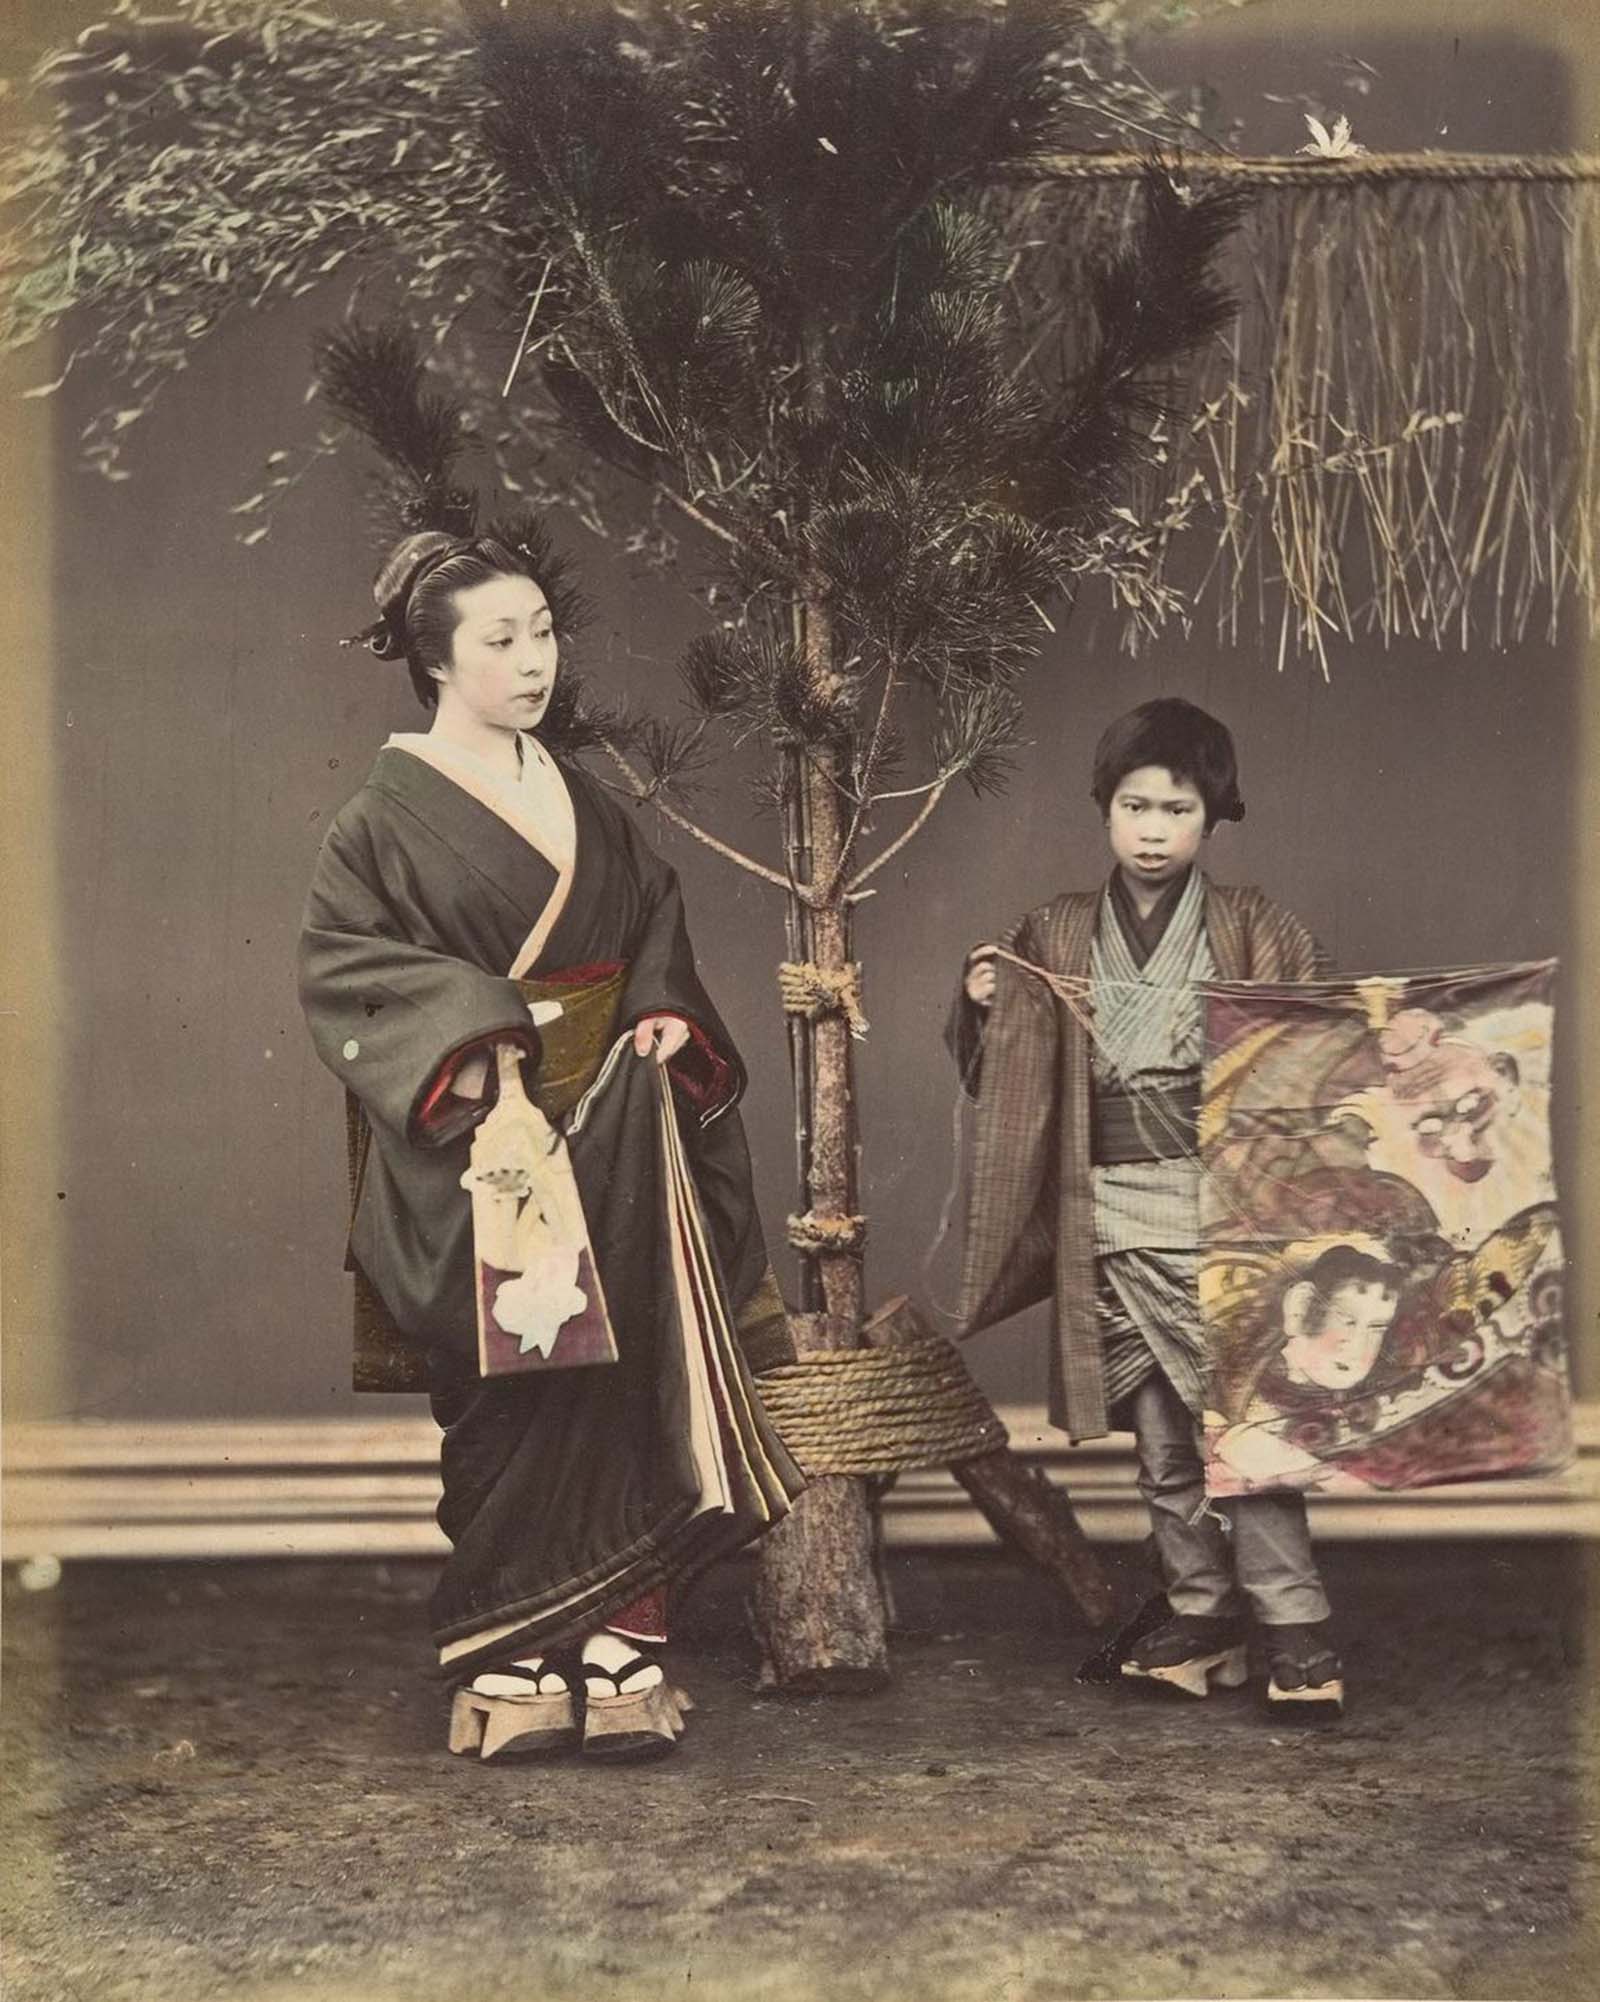 Photographies coloriées à la main du Japon au bord de la modernité, 1870